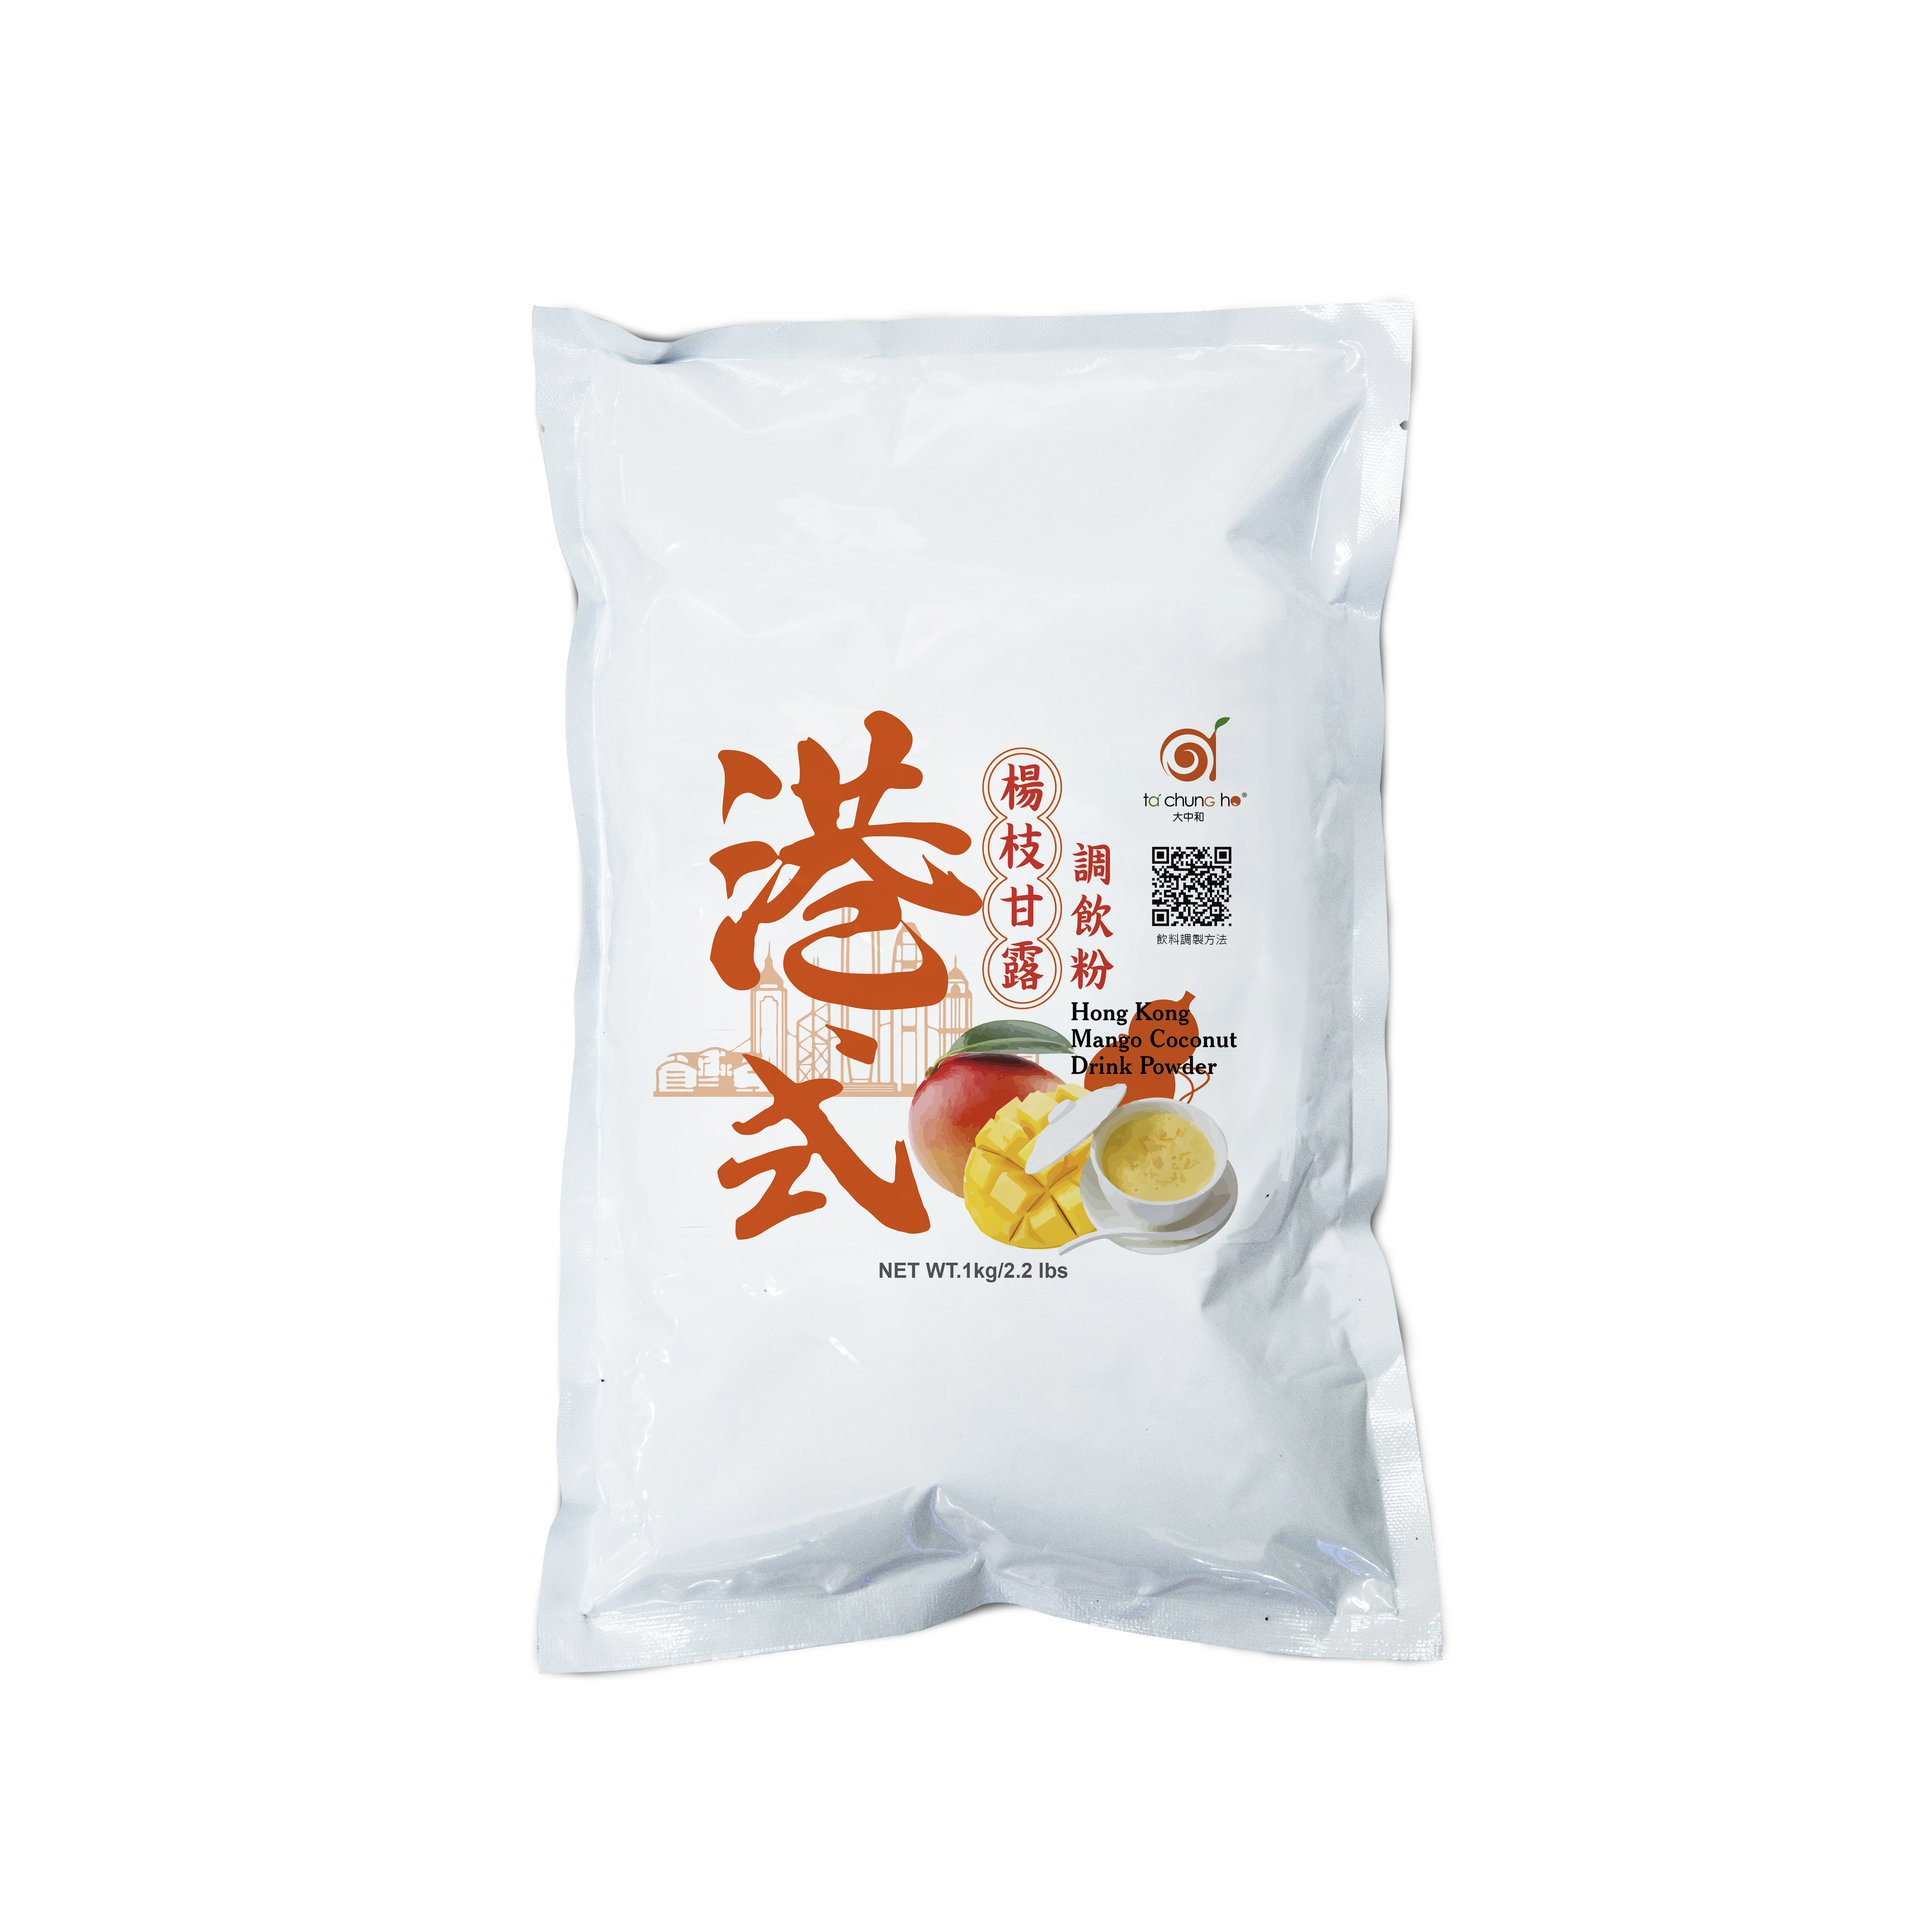 Hong Kong Mango Coconut Drink Powder